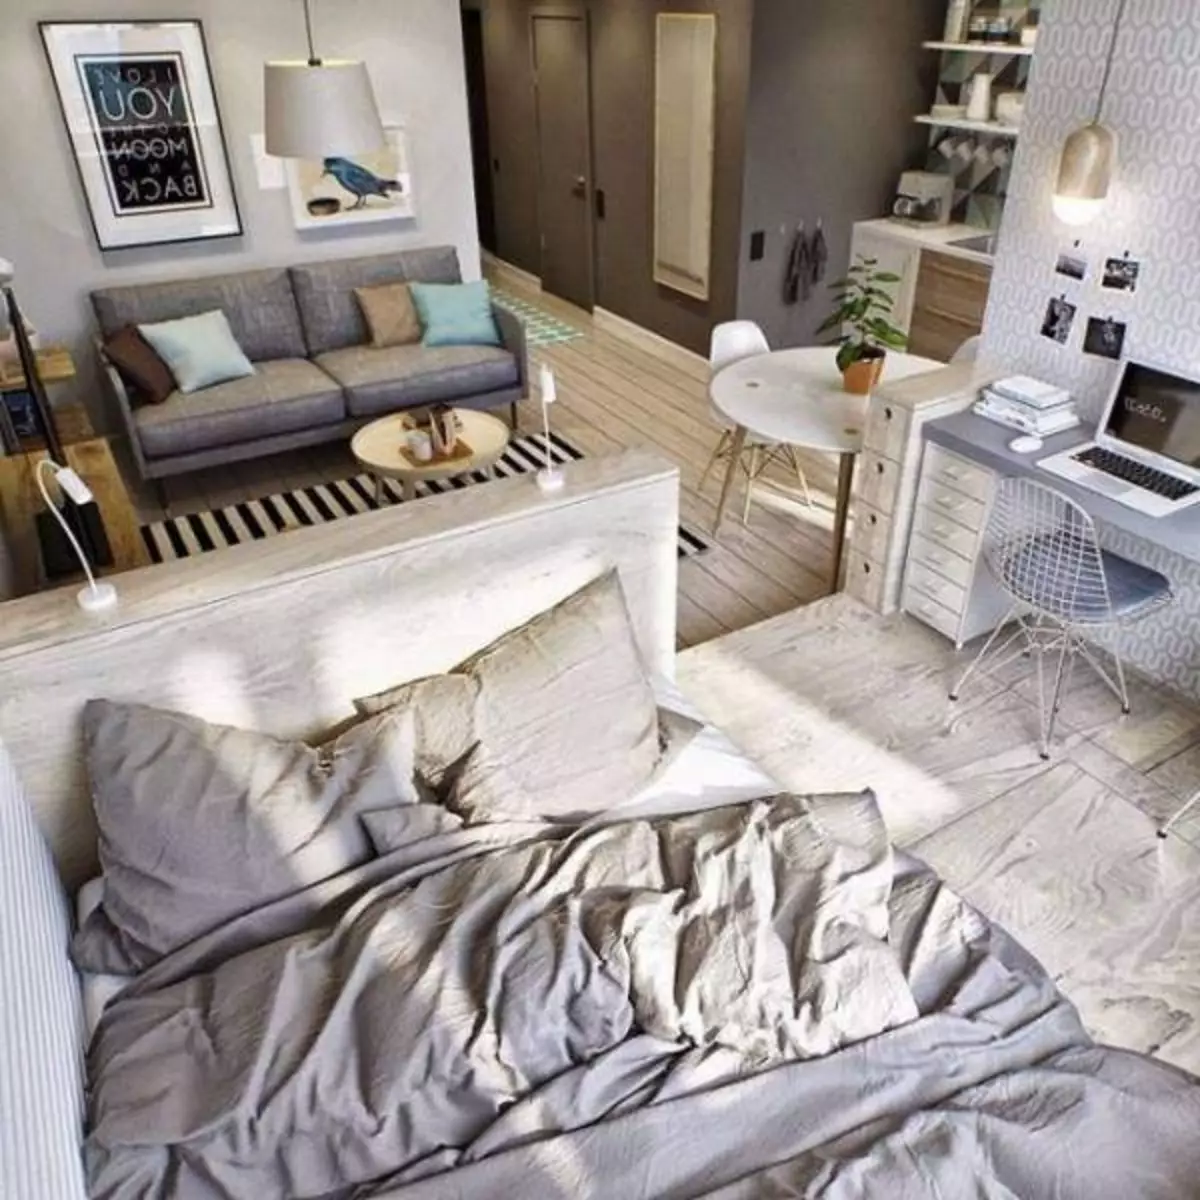 Interiér bytu pre mladú rodinu s dieťaťom: Možnosti usporiadania nábytku v izbách (39 fotografií)